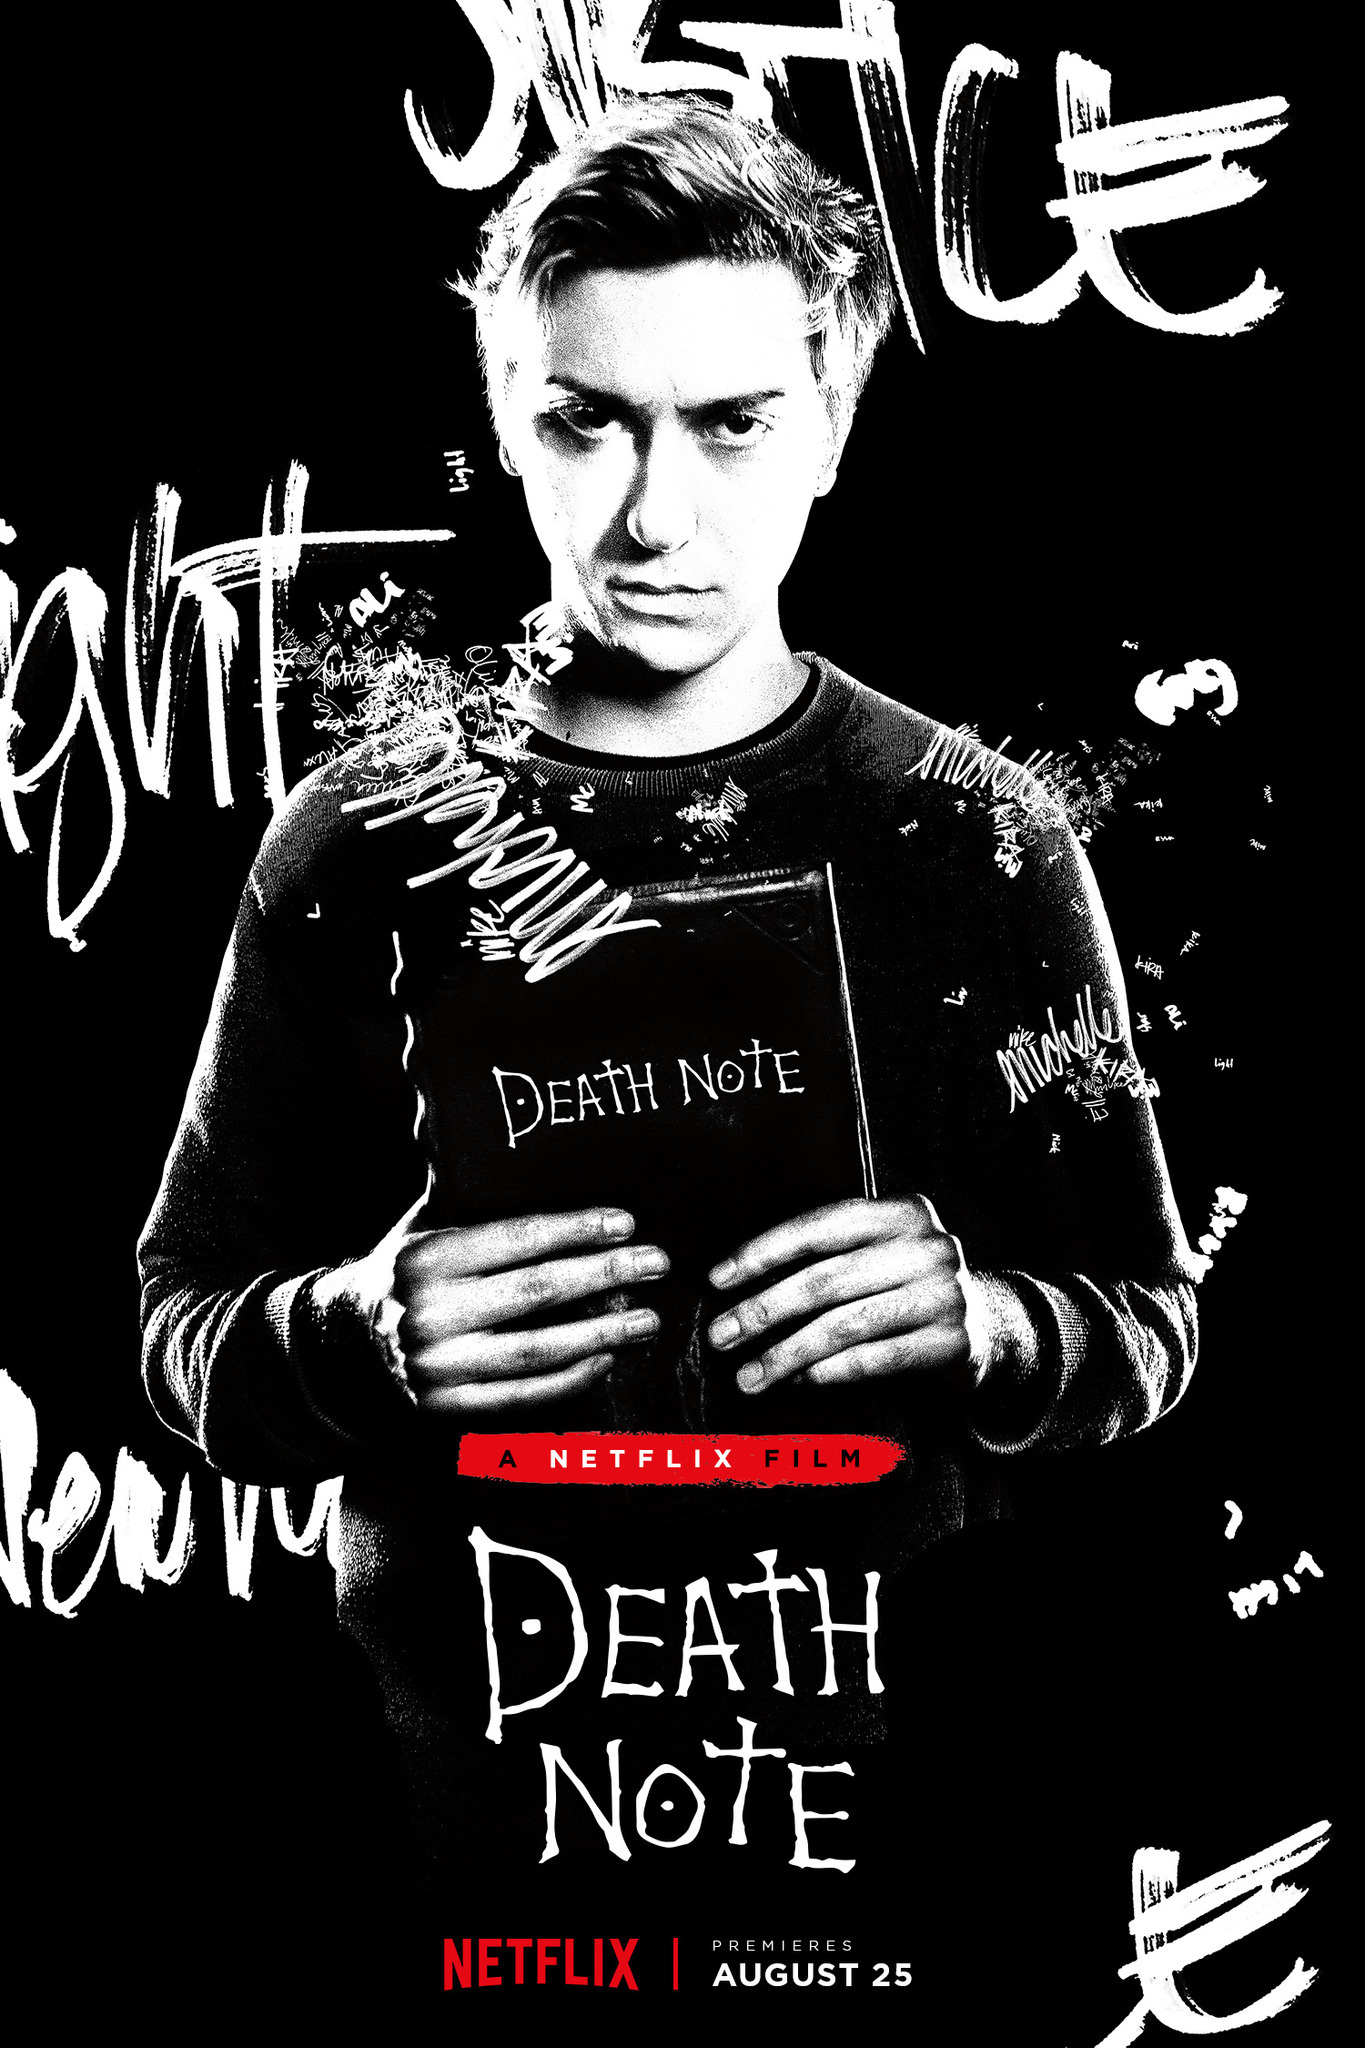 ดูหนังออนไลน์ฟรี Death Note (2017) เดธโน้ต ฉบับฮอลลีวูด